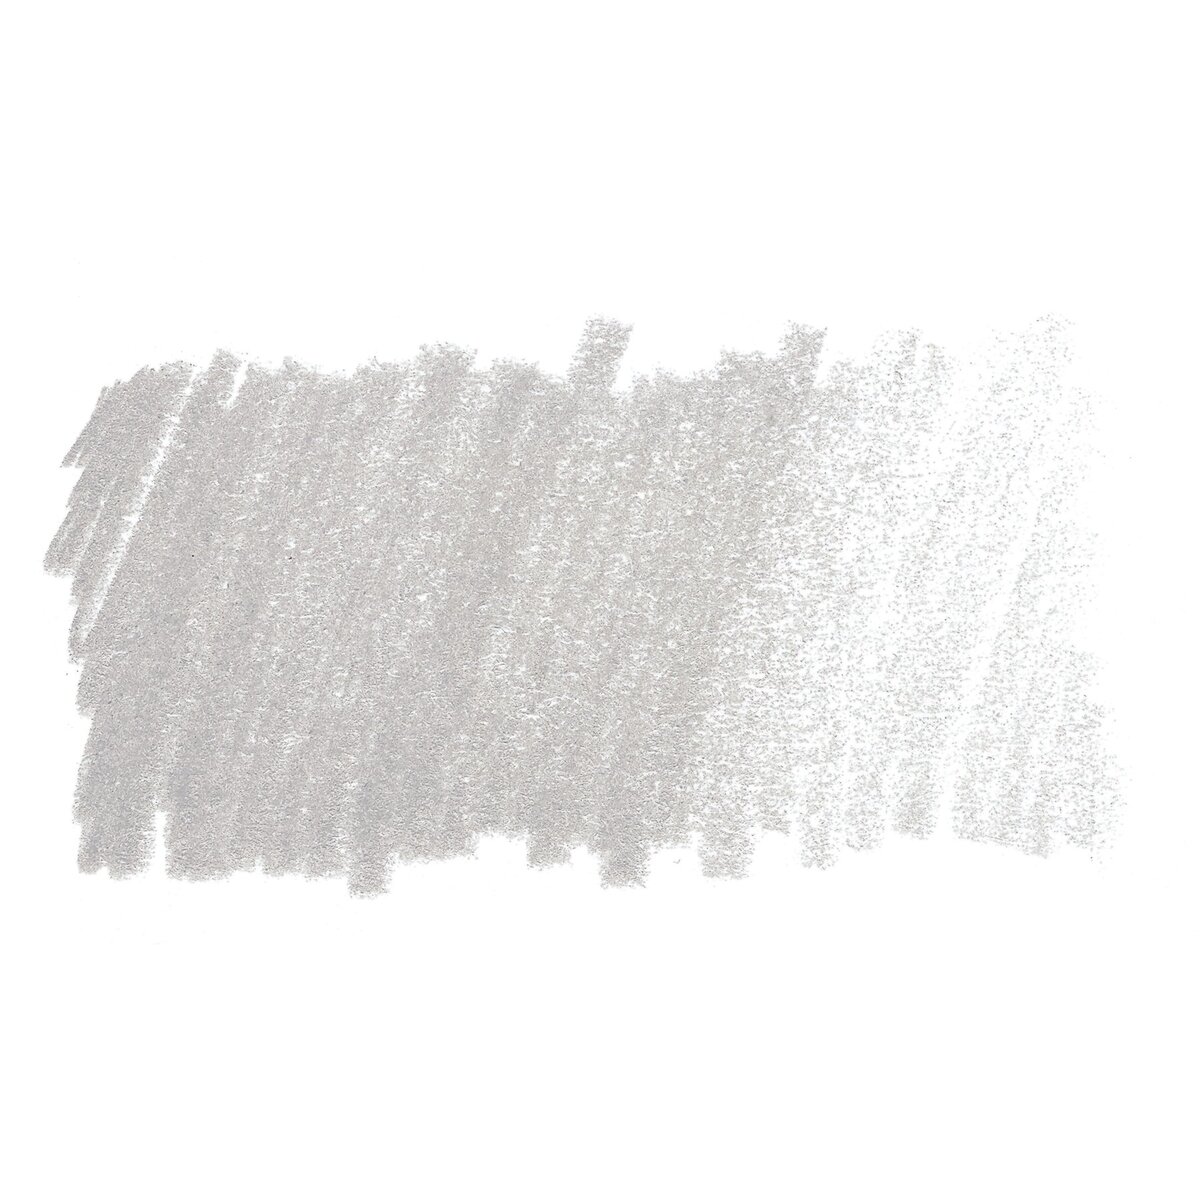 Prismacolor Premier Colored Pencil, Warm Grey 70% (3438)